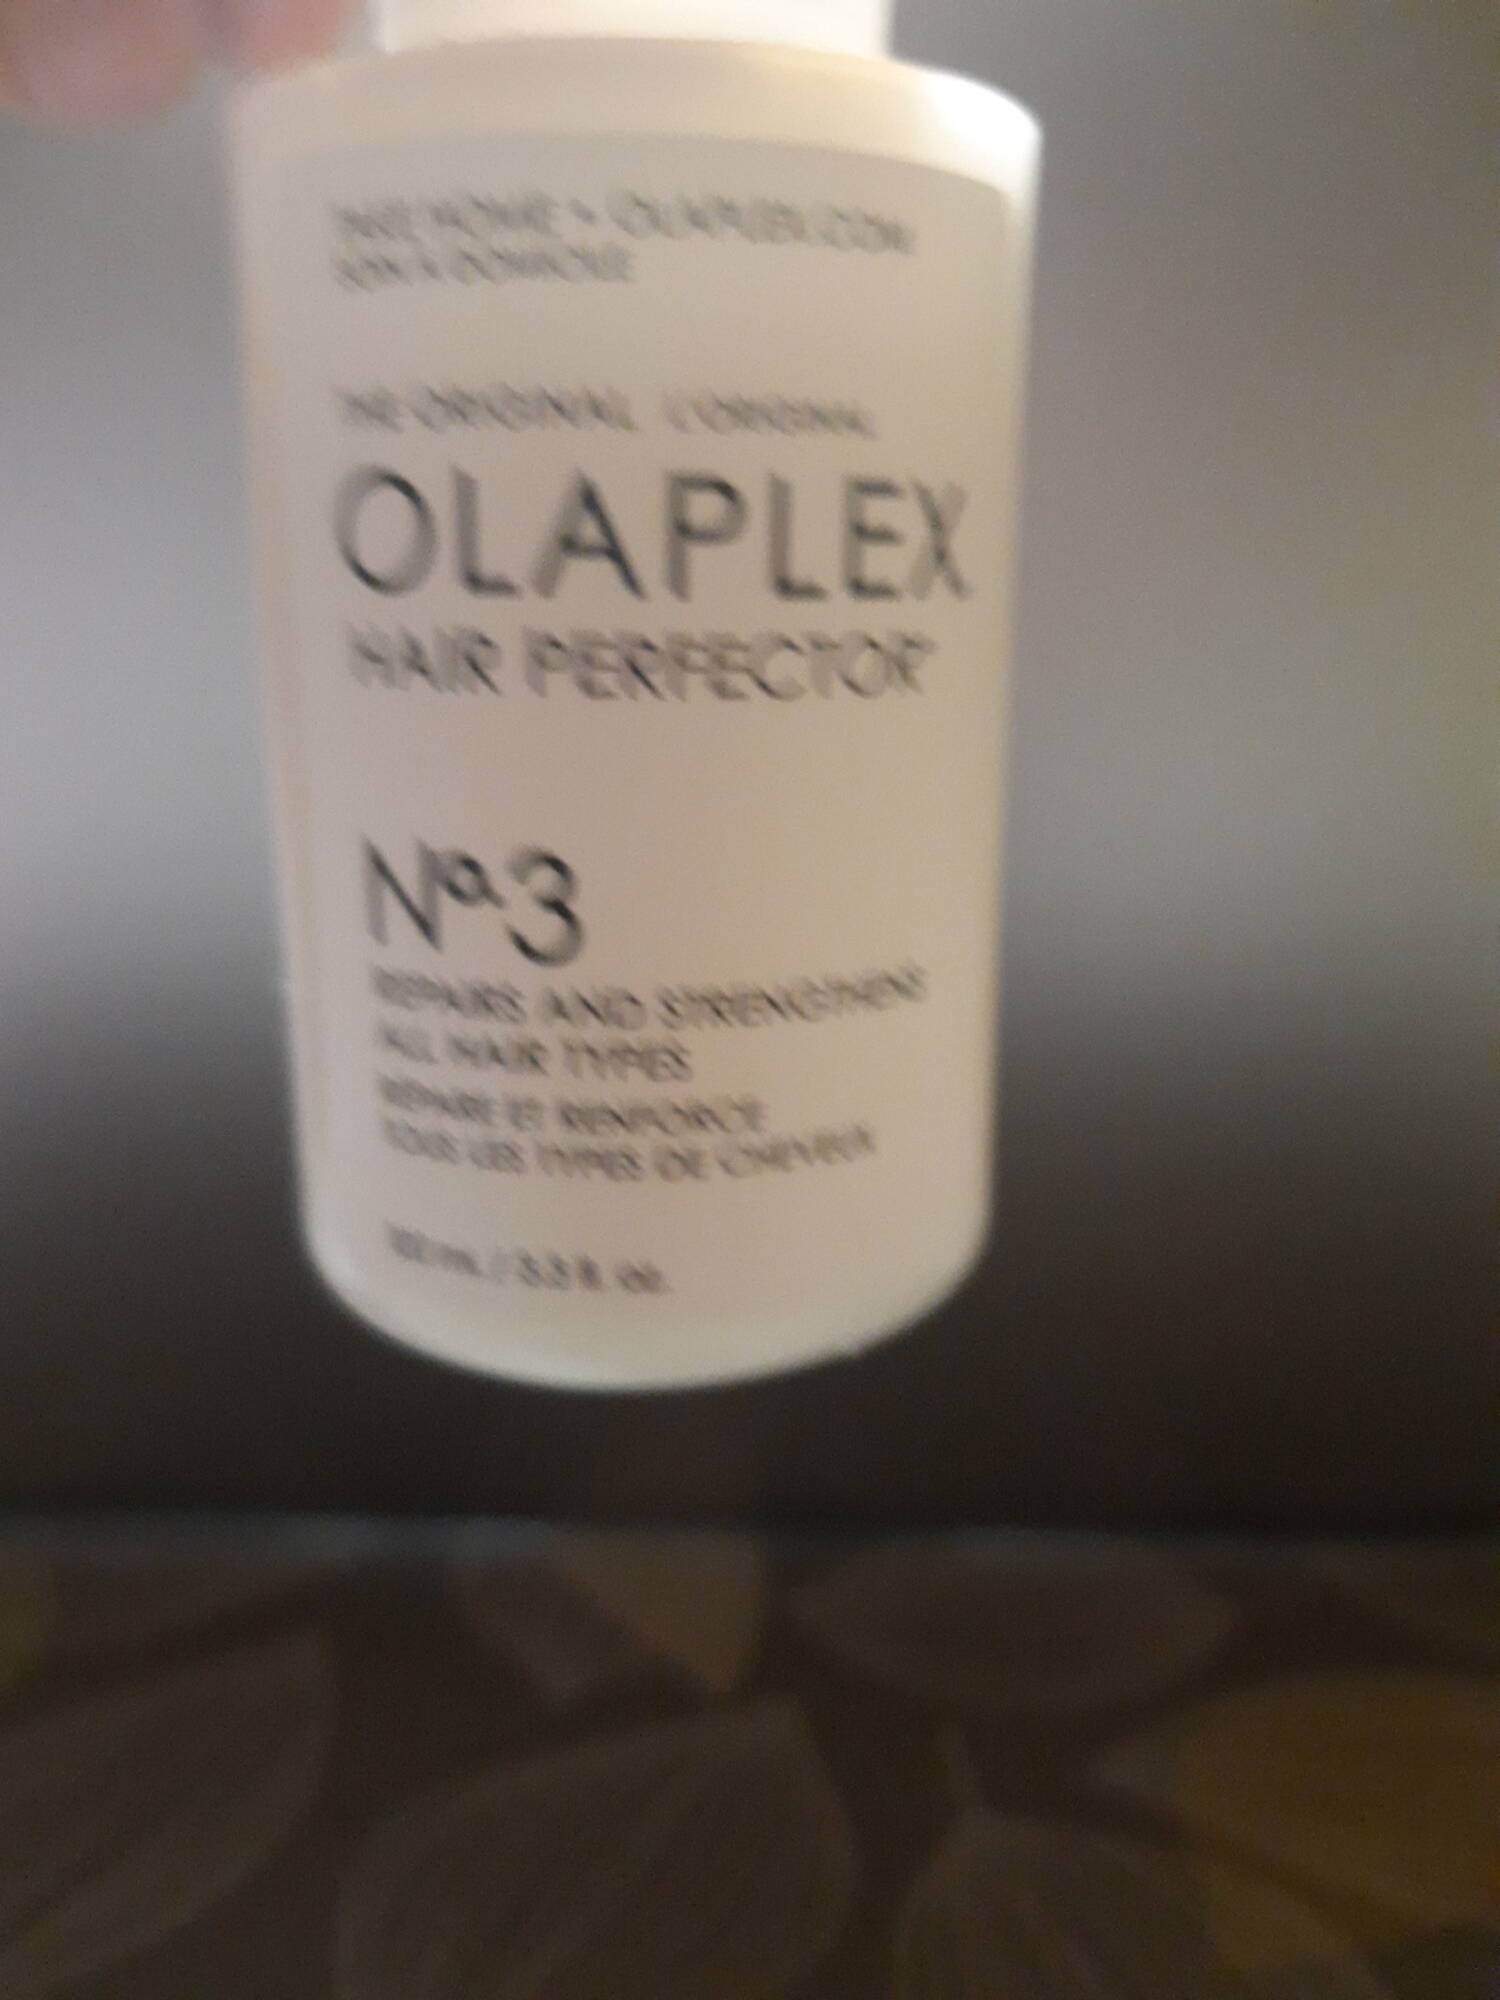 OLAPLEX - Hair perfector N°3 - Lotion répare et renforce 